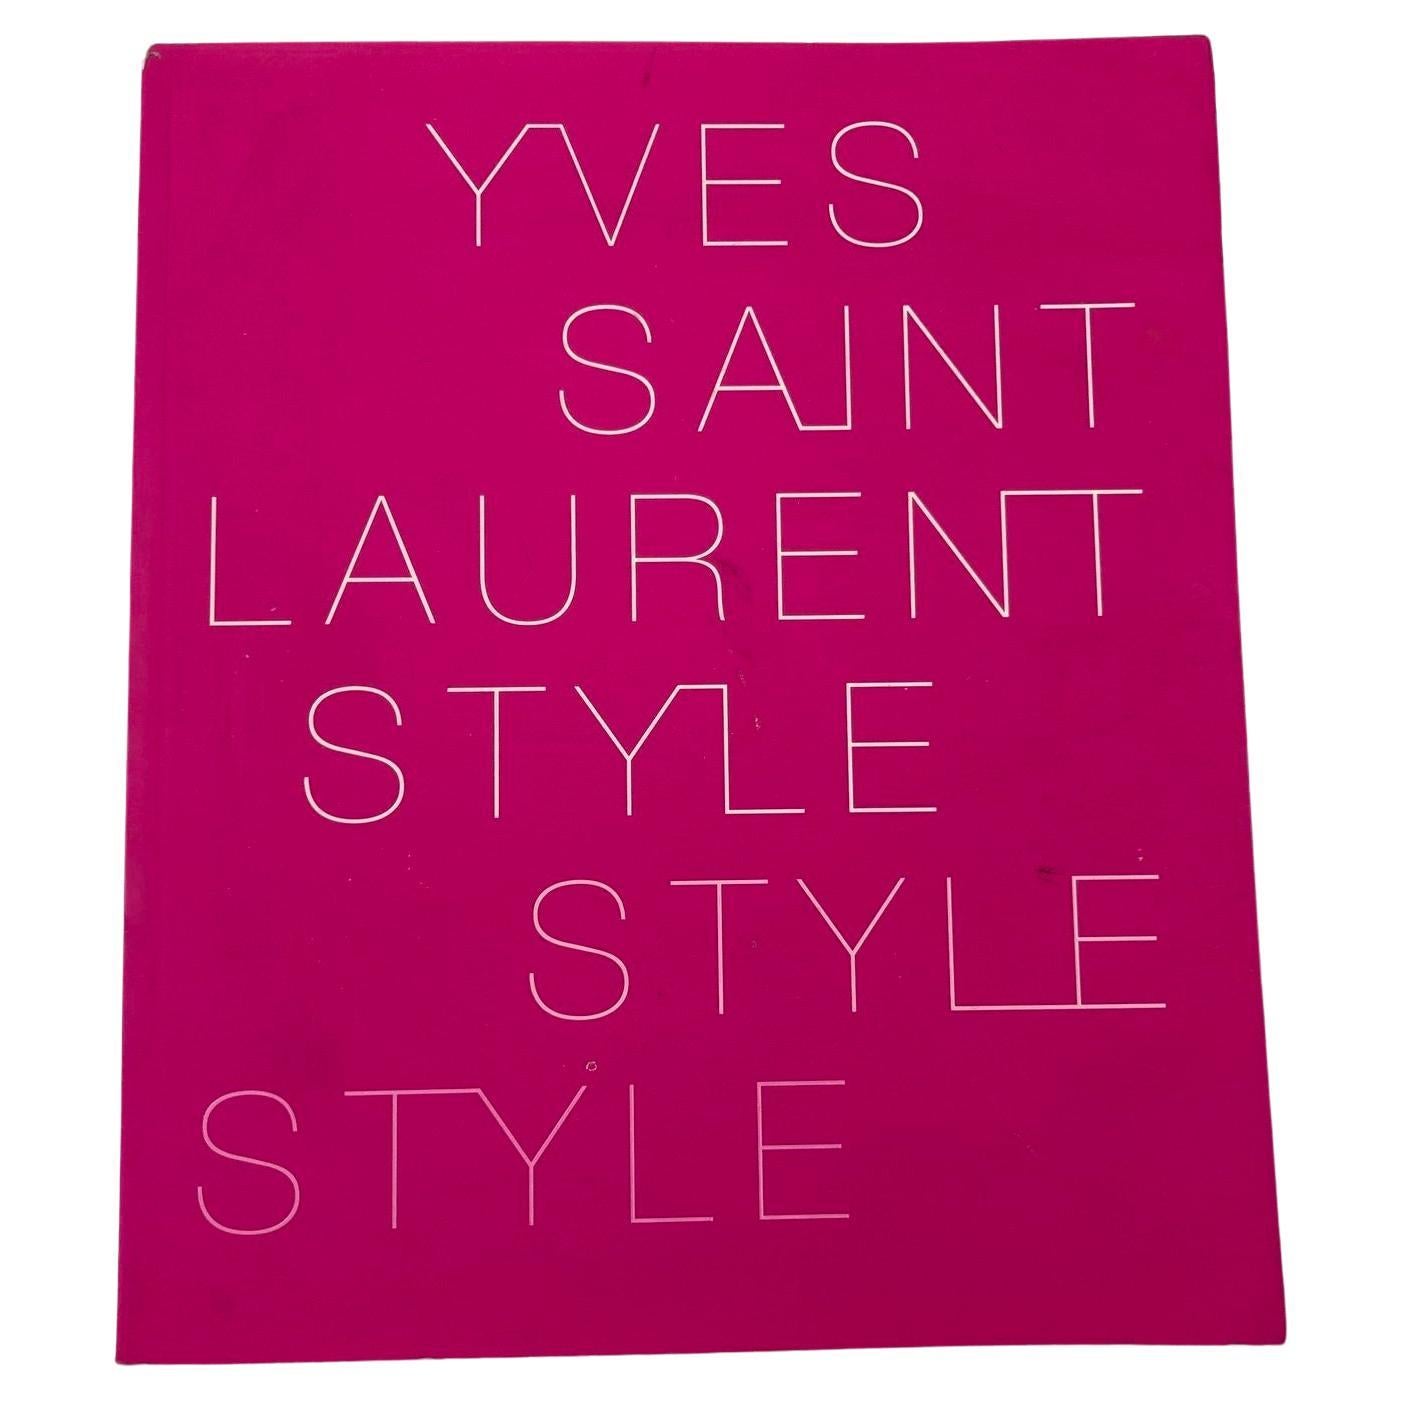 Le livre rose Yves Saint Laurent Style Paperback 2008 de la Fondation Pierre Berge